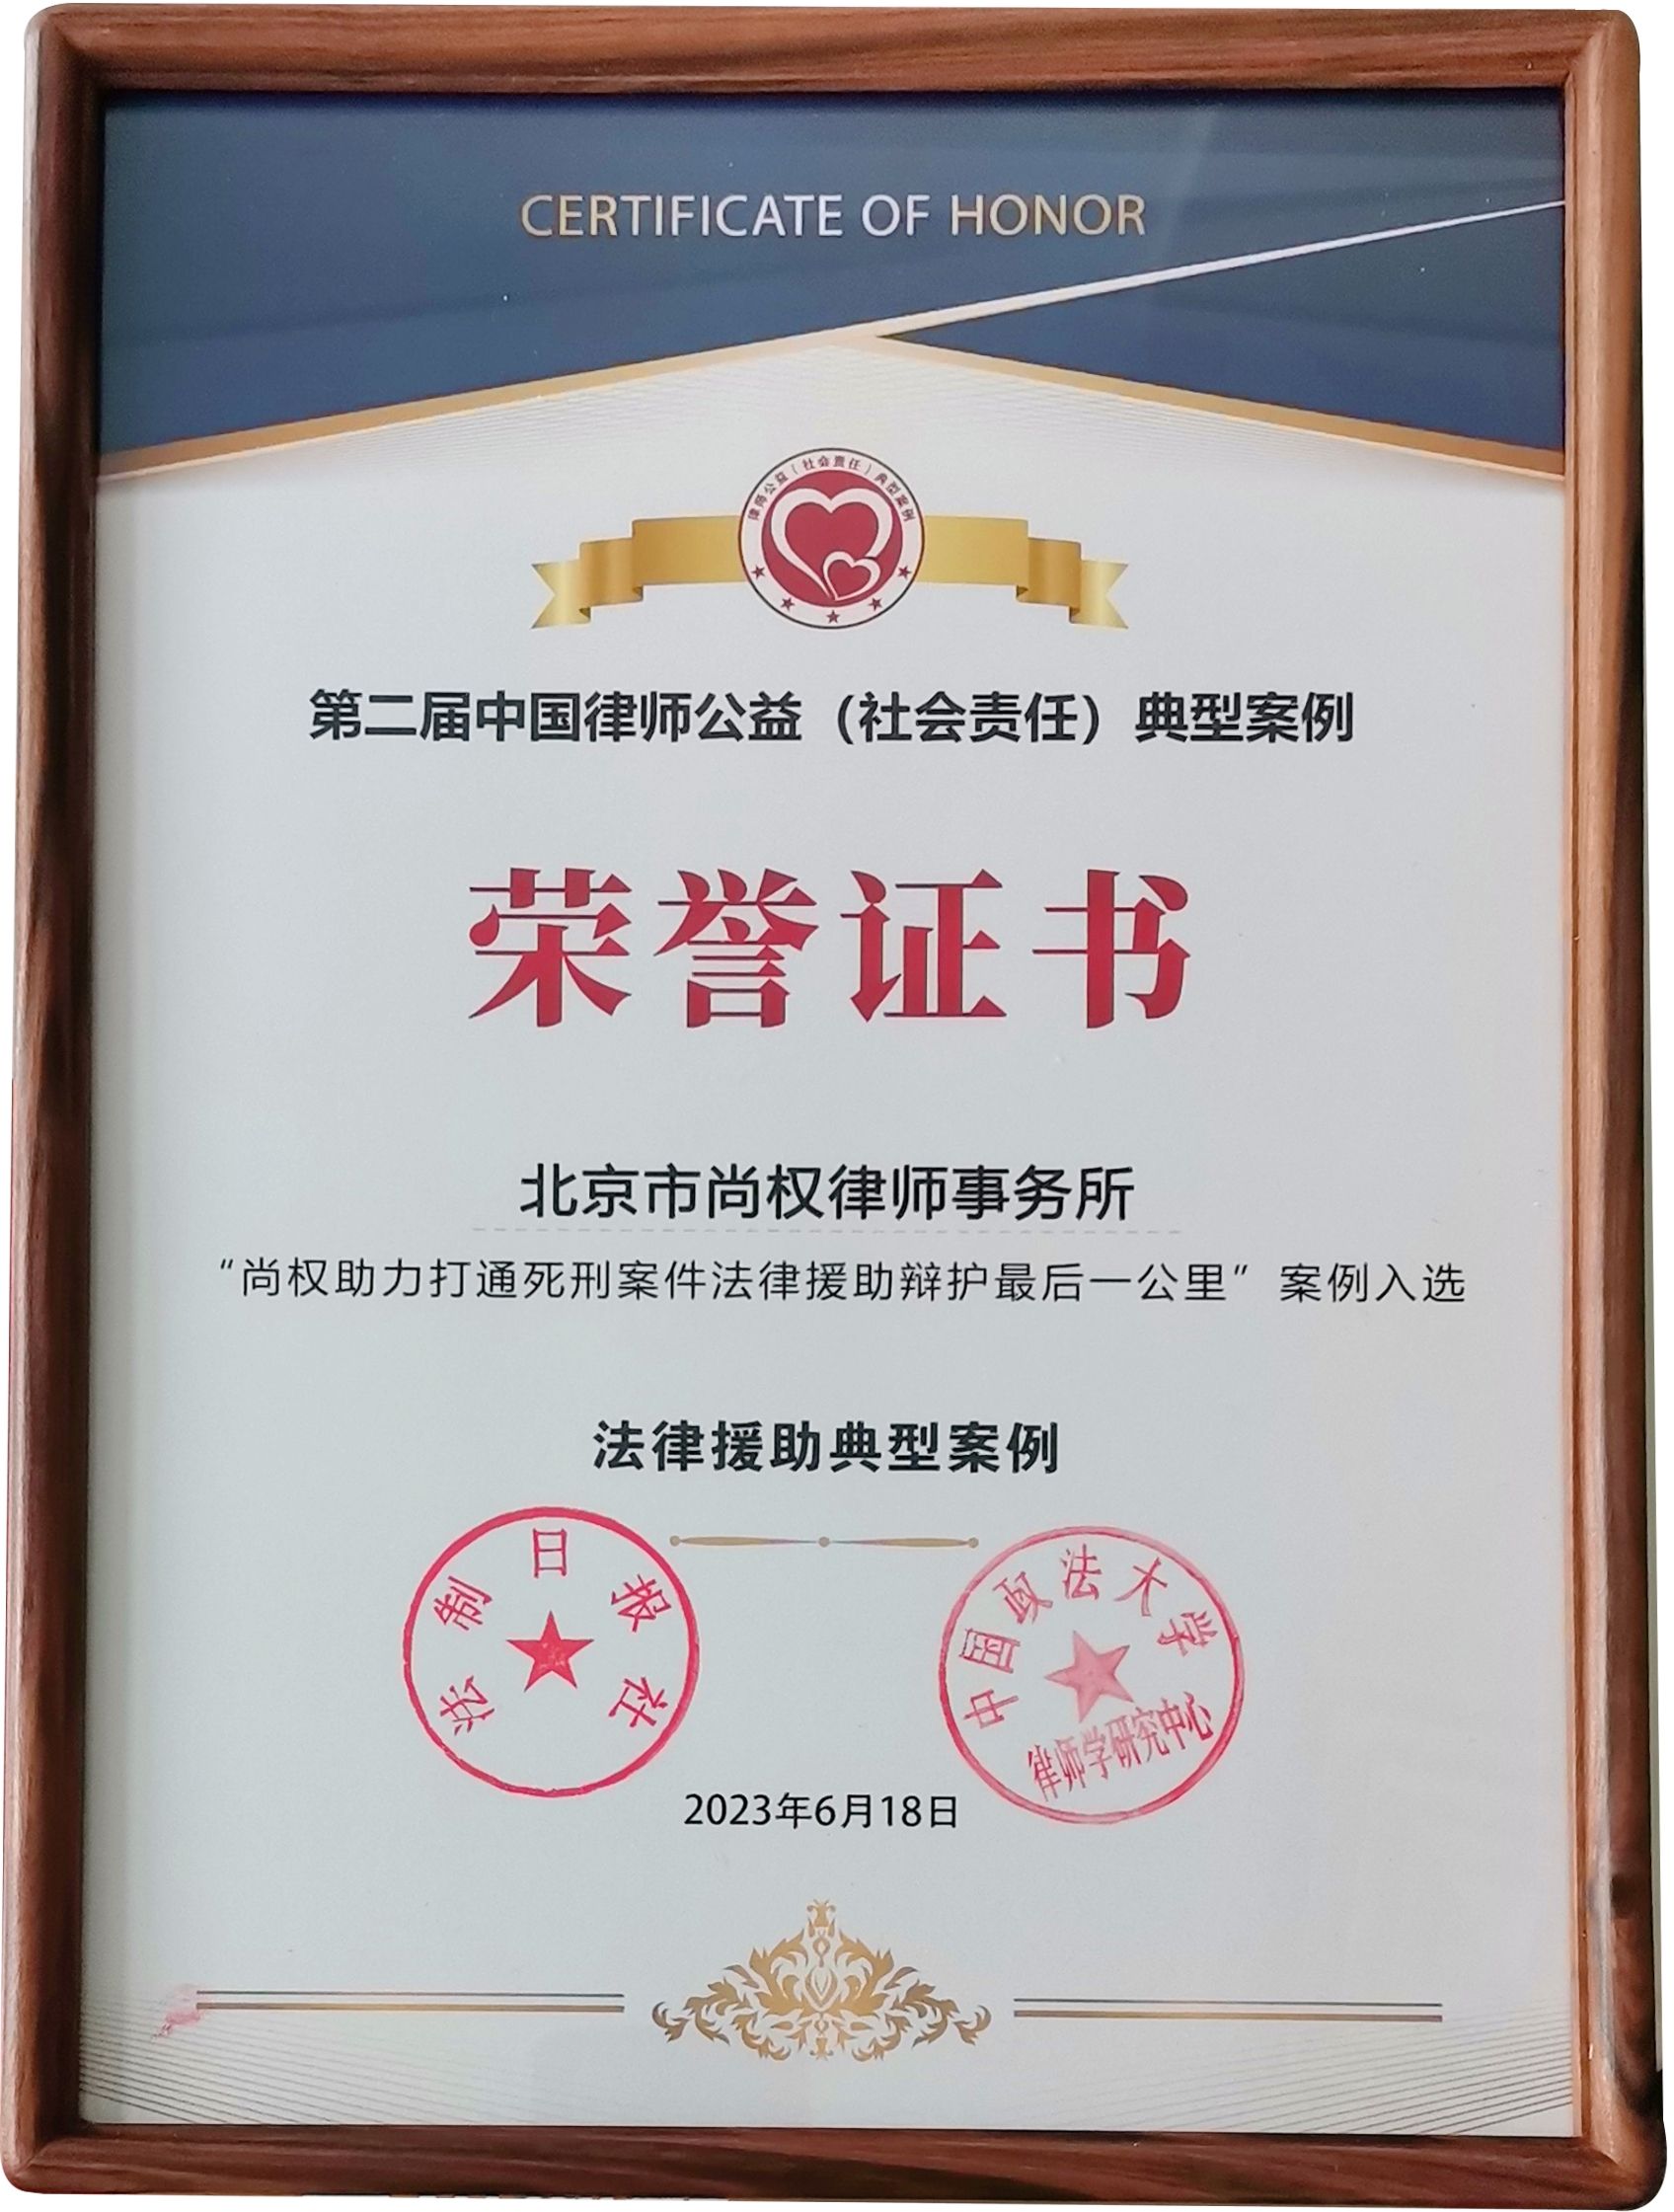 第二届中国律师公益（社会责任）典型案例——法律援助典型案例荣誉证书